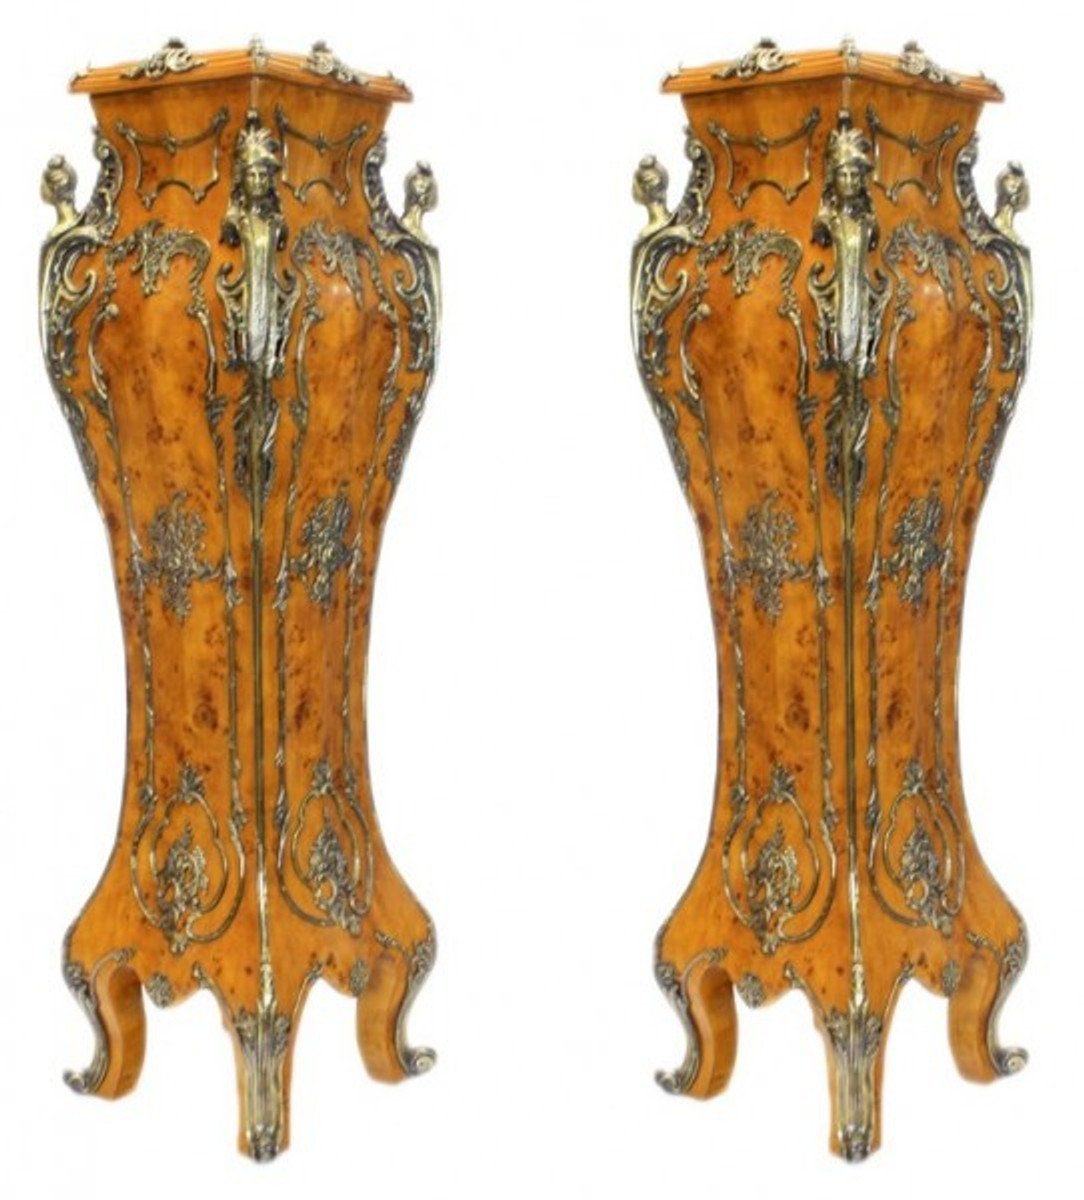 Casa Padrino Beistelltisch Luxus Barock Säulen Set Vogelaugen Ahorn / Messing (2 Stk) H 160 cm x B 40 x L 40 cm